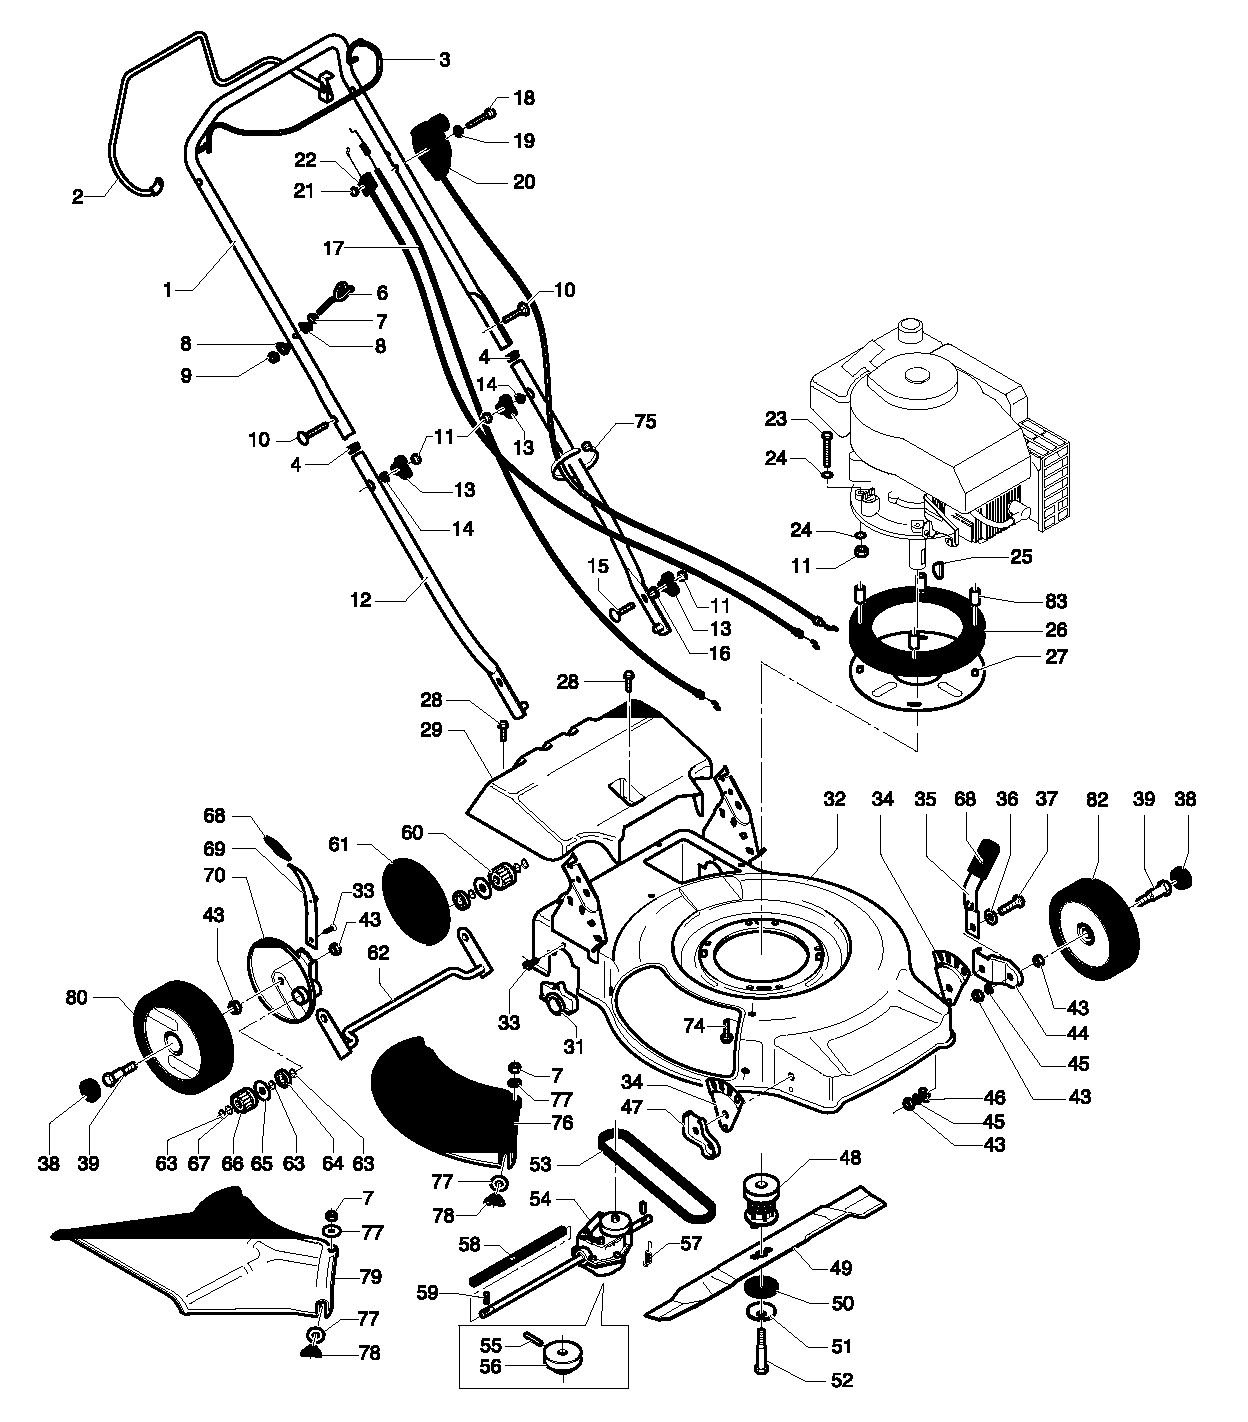 Газонокосилка своими руками: самодельная конструкция с электродвигателем от стиральной машины или бензопилы